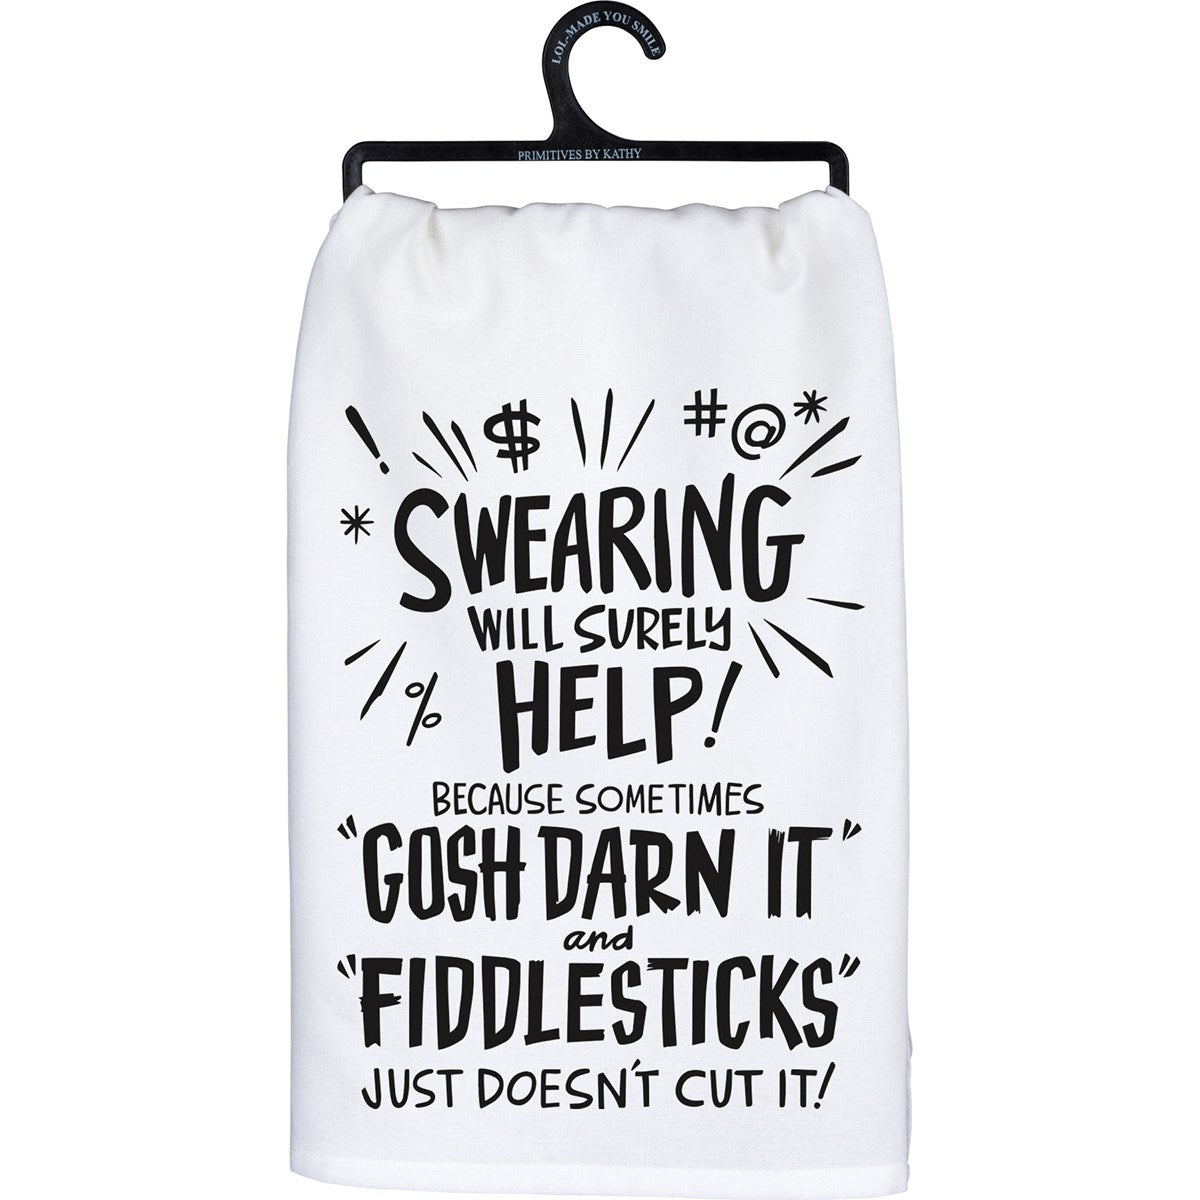 "FIDDLESTICKS" JUST DOESN'T CUT IT!" DISH TOWEL